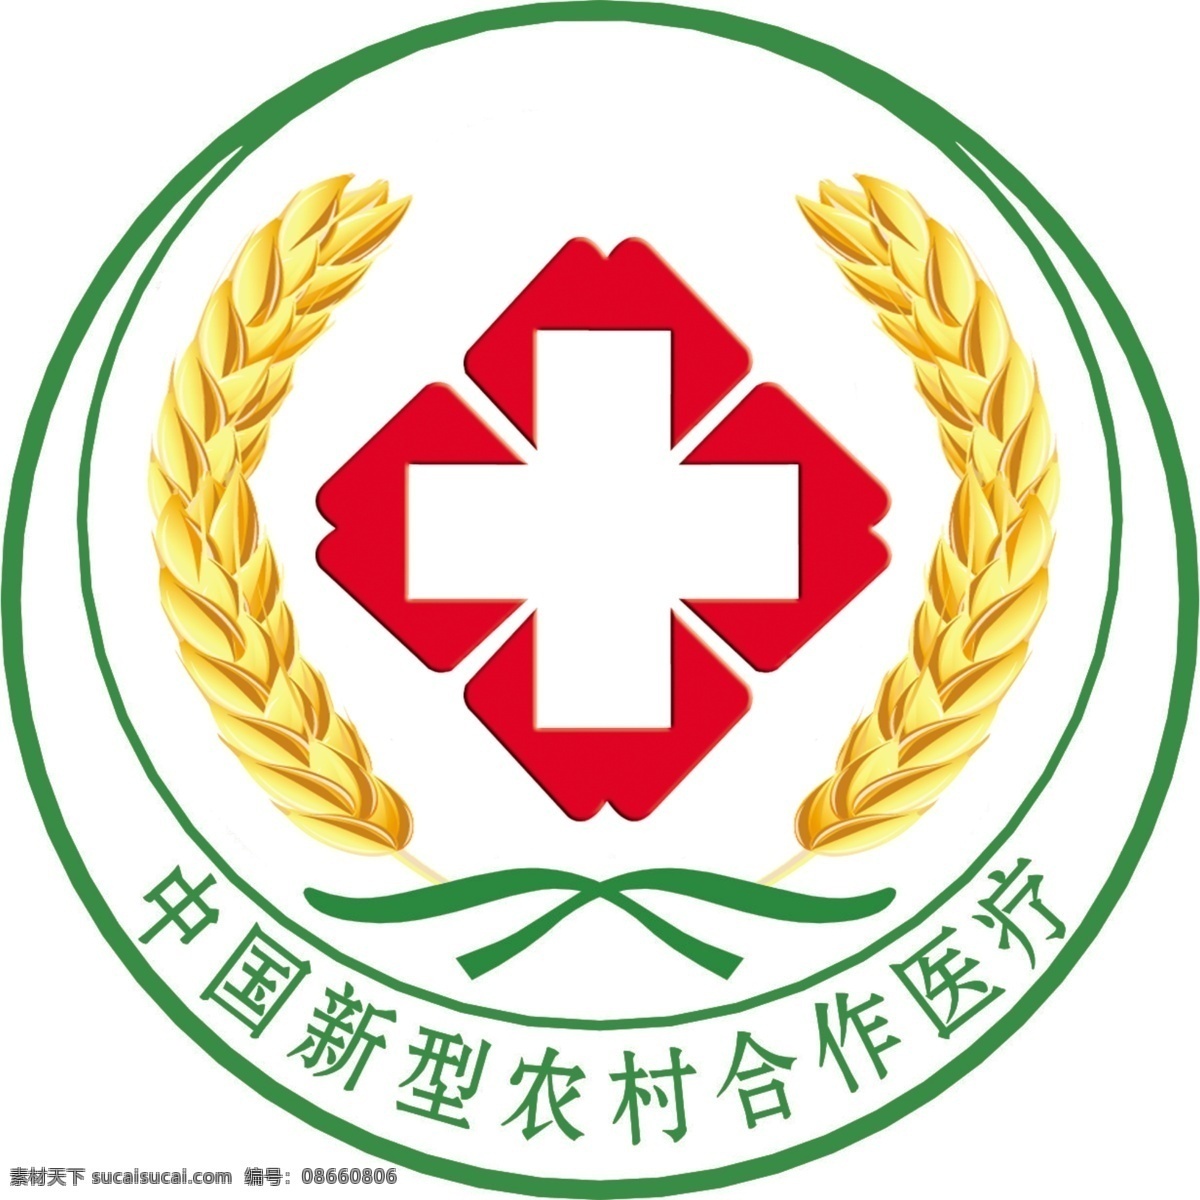 中国 新型 农村 合作医疗 中国新型 农村合作医疗 红十字 麦穗 logo 标志图标 企业 标志